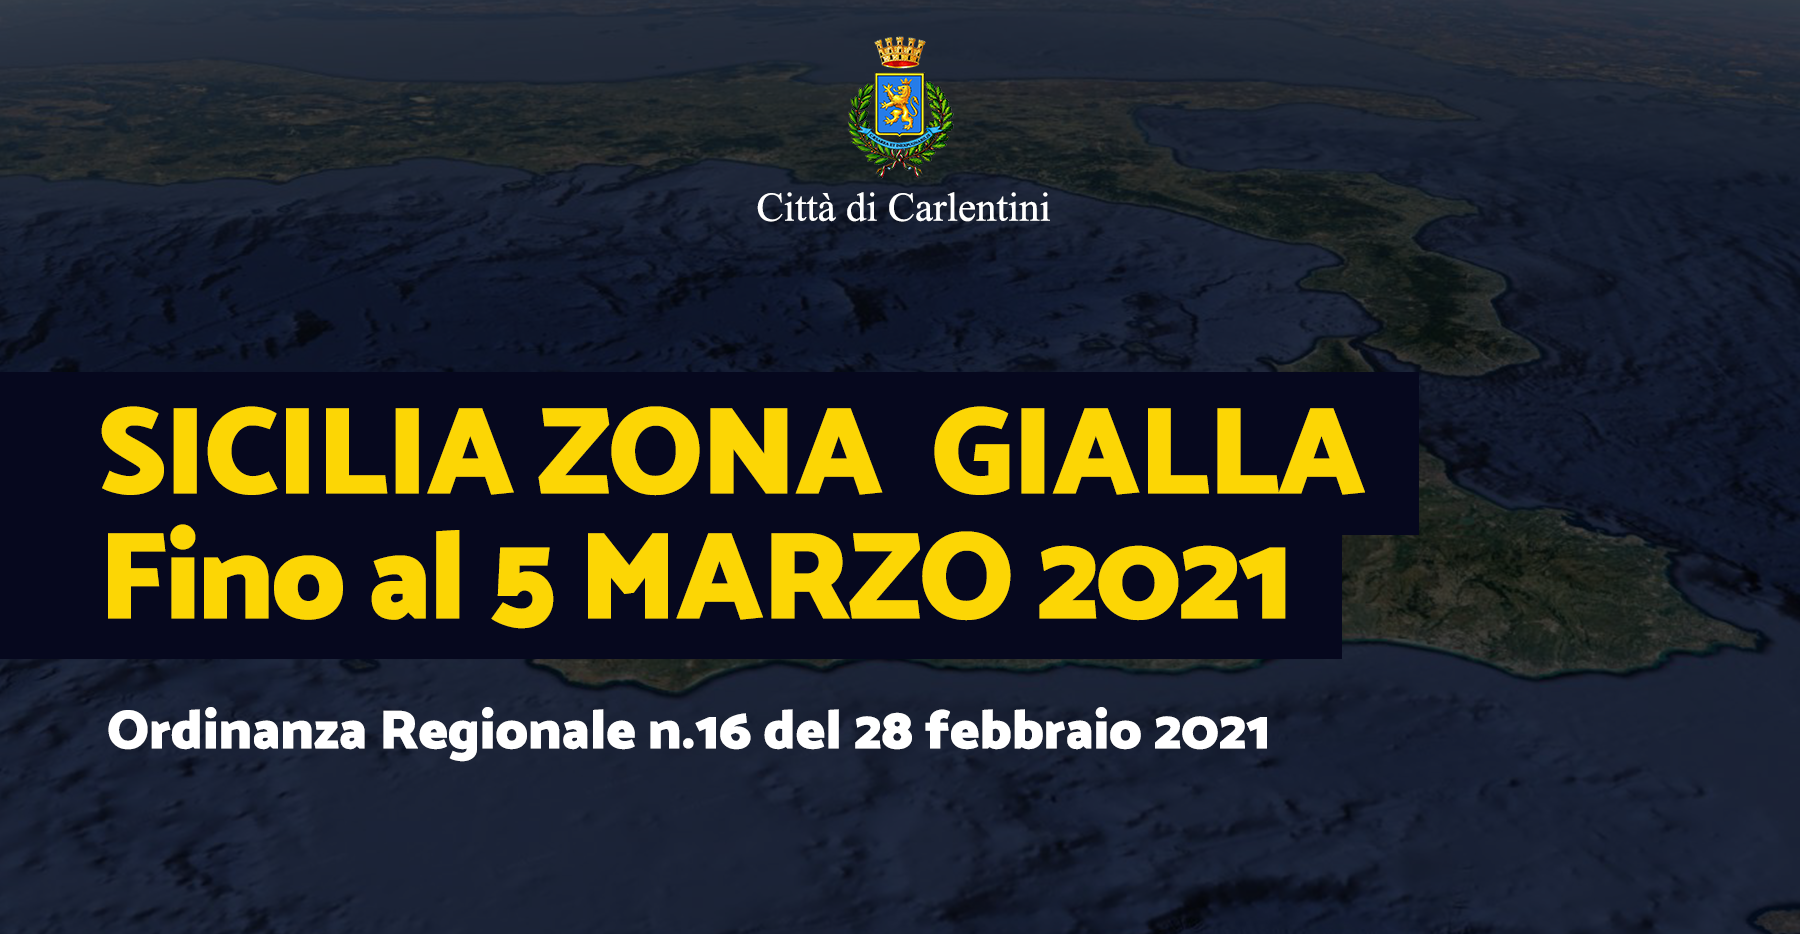 Sicilia “Zona Gialla” fino al 5 marzo 2021: Ordinanza Regionale n° 16 del 28 febbraio 2021